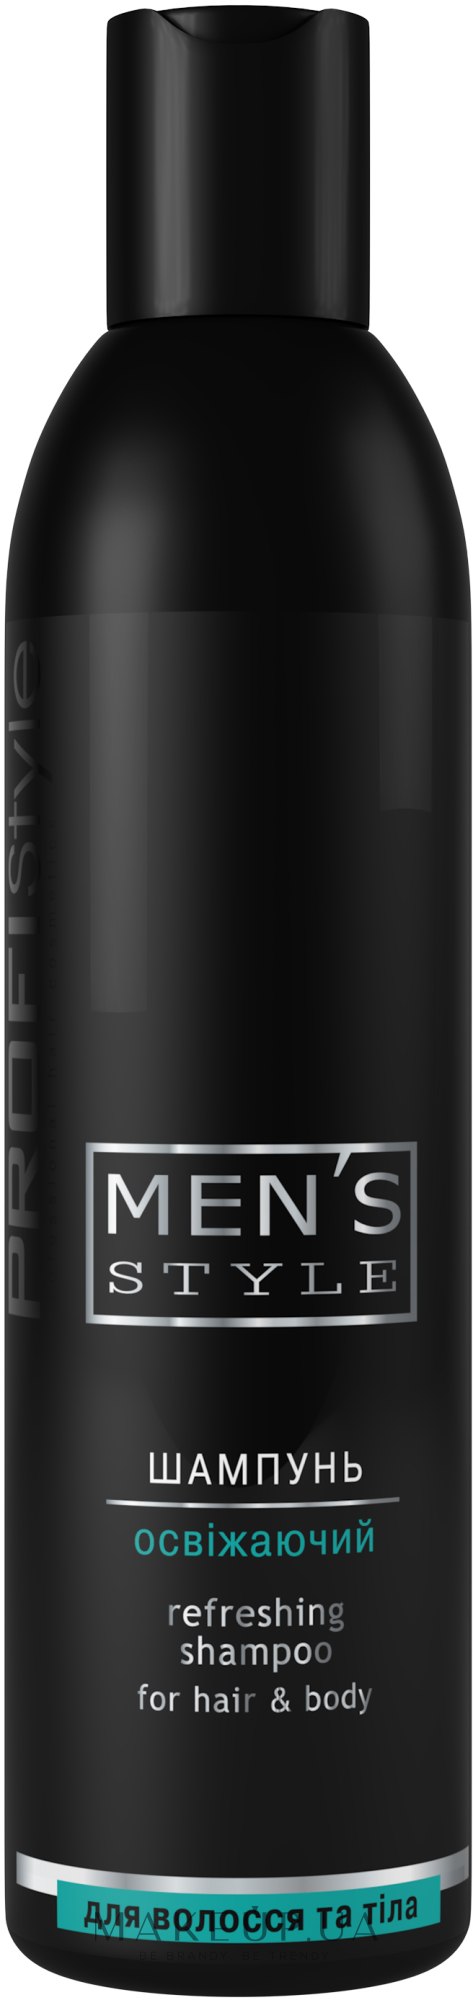 Шампунь освіжаючий для чоловіків - Profi Style Refreshing Shampoo For Men — фото 250ml